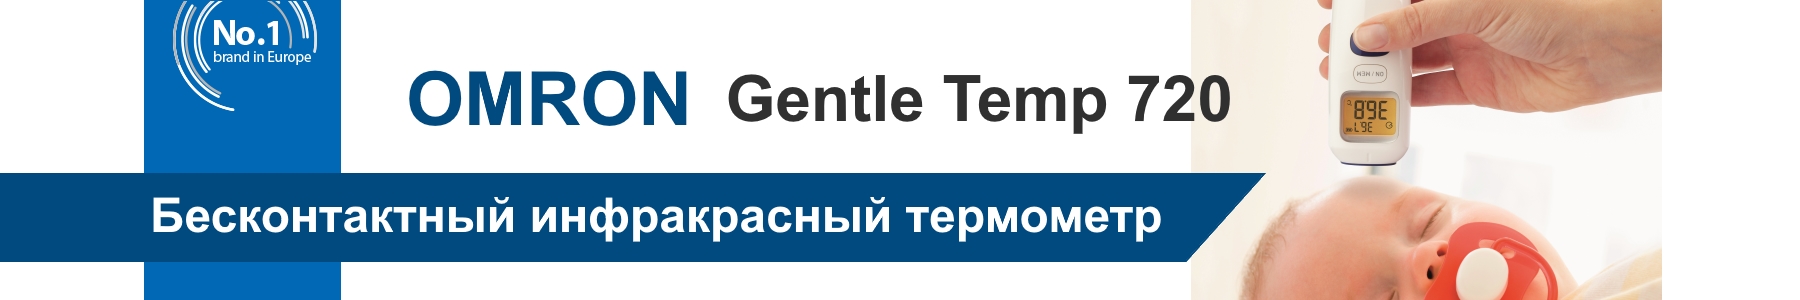 Инфракрасный бесконтактный термометр Оmron Gentle Temp 720